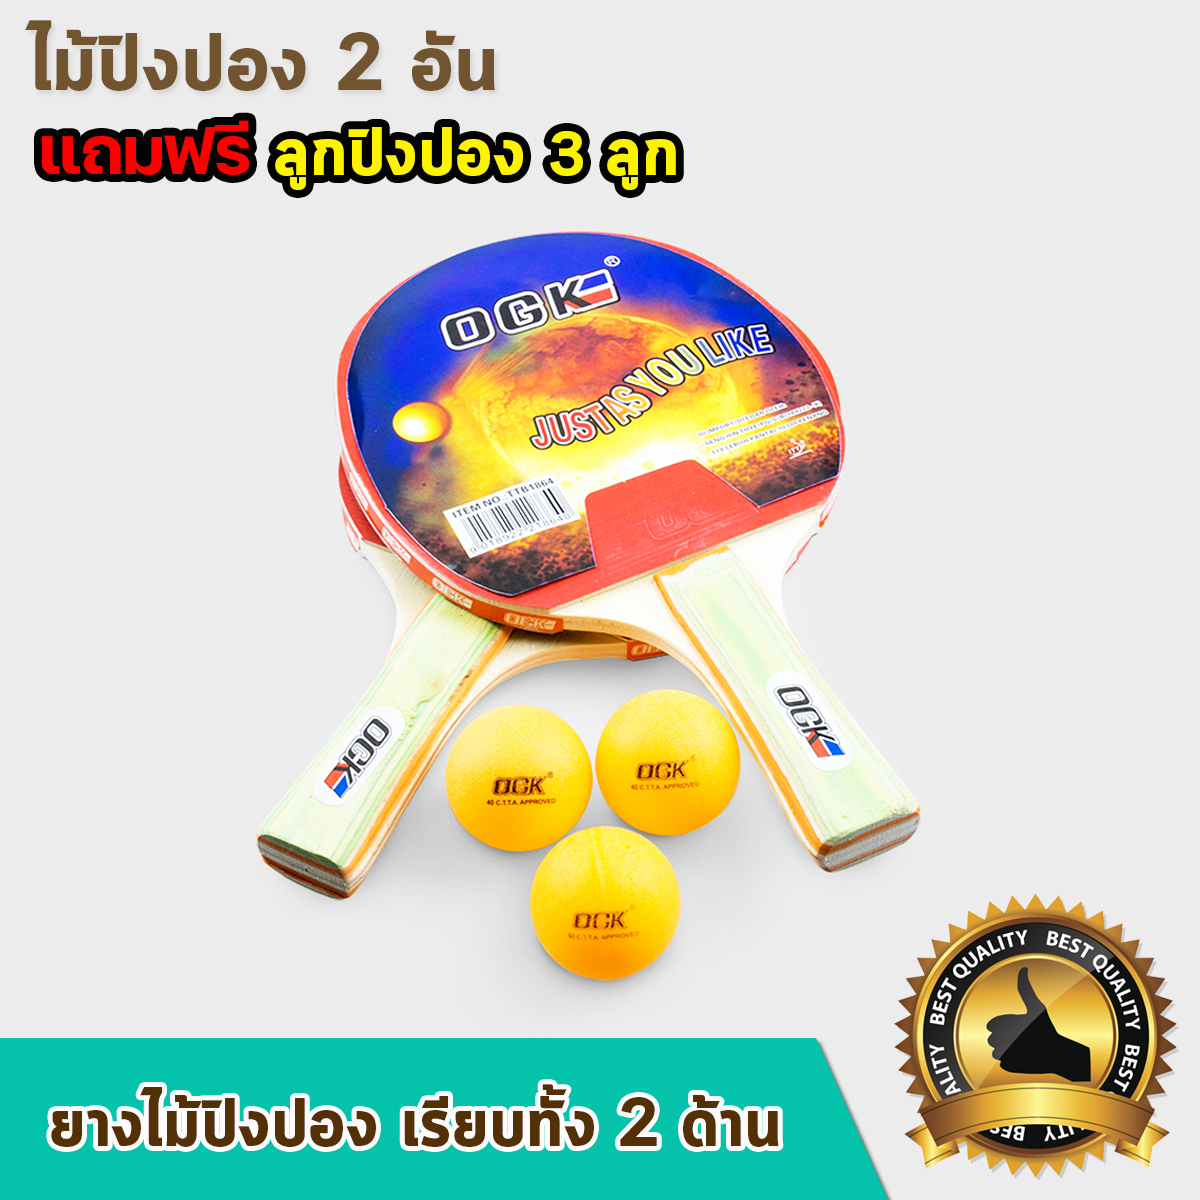 ไม้ปิงปองแพ็คคู่ OGK (Table tennis racket) ไม้ตีปิงปองถูกๆ 1 แพ็ค บรรจุ ไม้ปิงปอง 2 อัน ลูกปิงปอง 3 ลูก Ping Pong ball